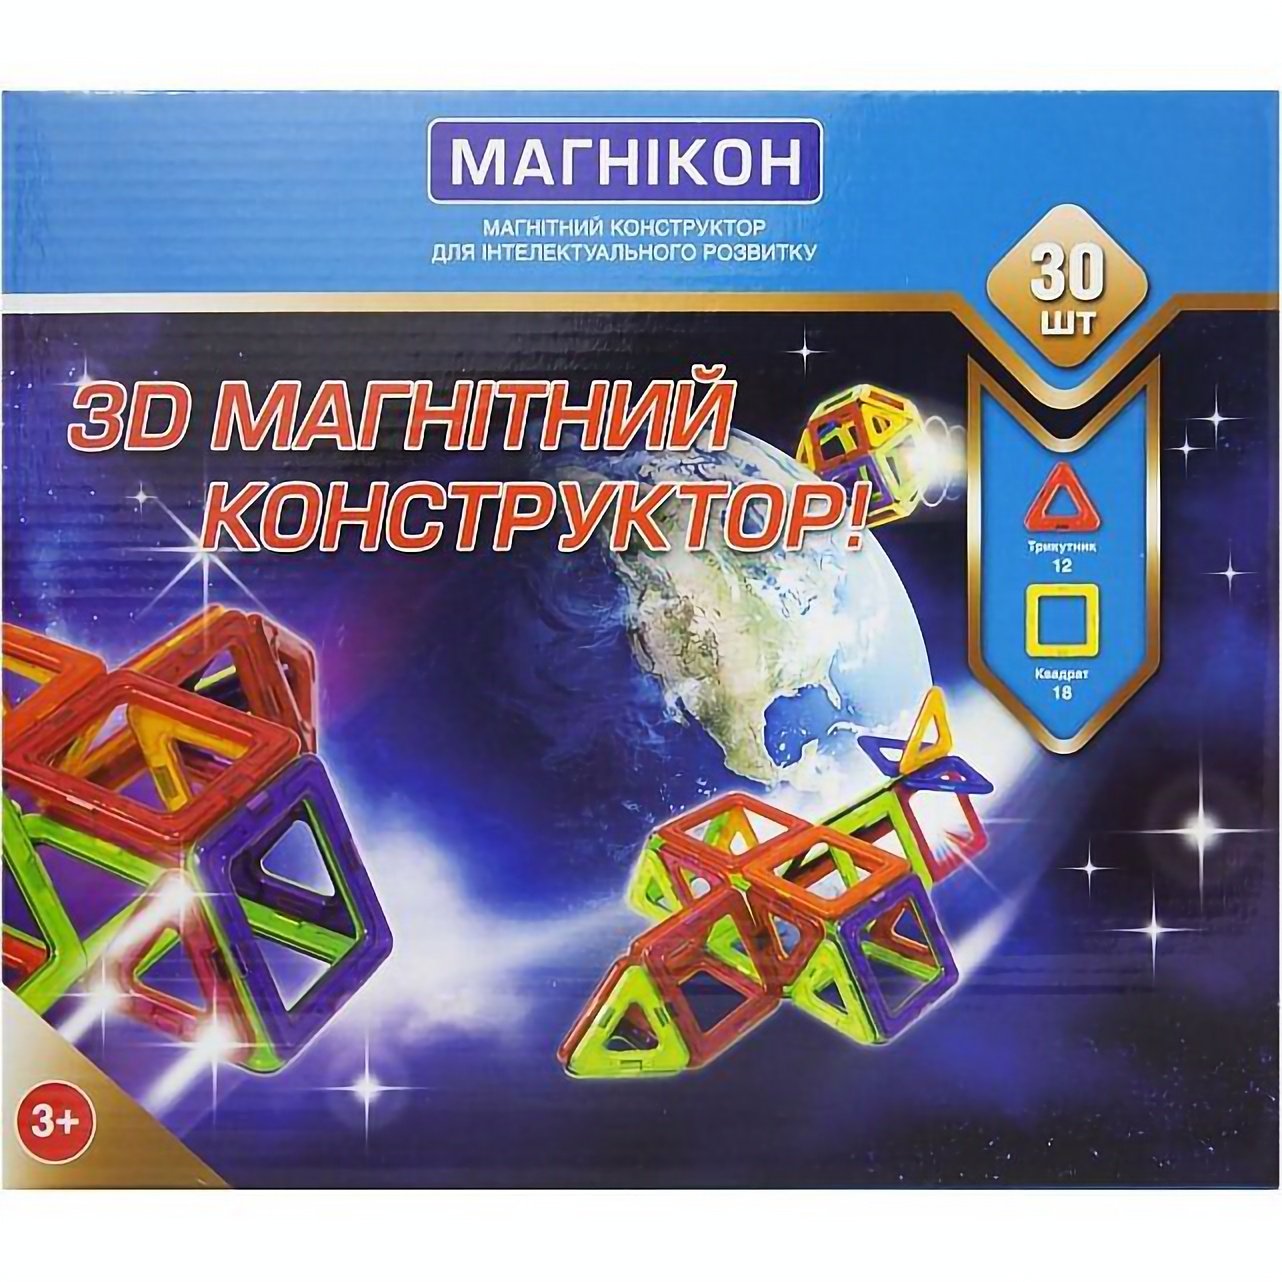 3D магнітний конструктор Магнікон, 30 елементів (МК-30) - фото 1